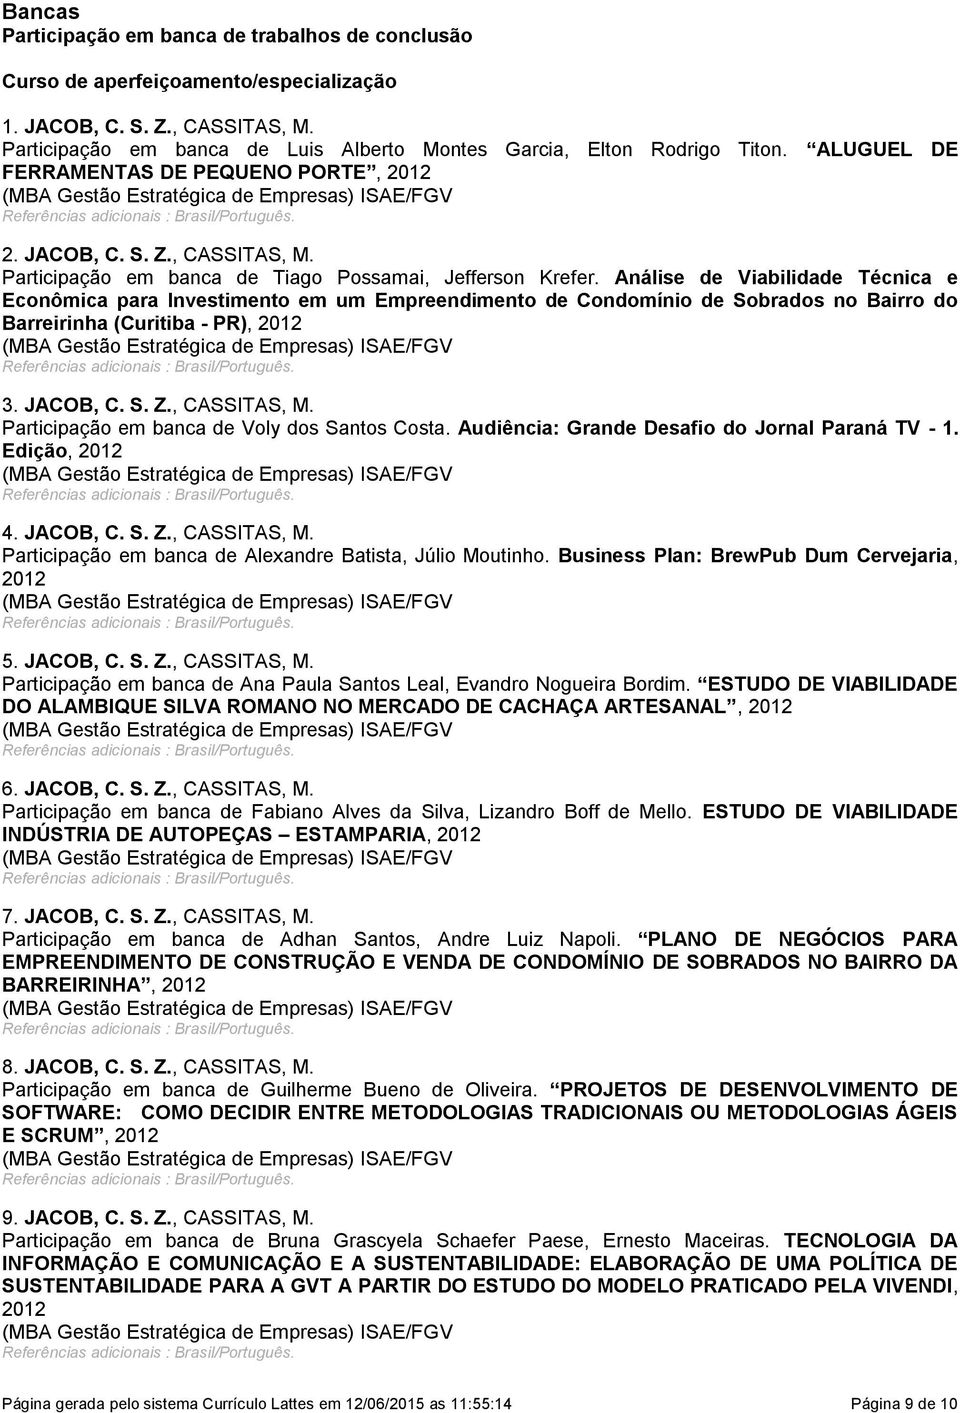 Análise de Viabilidade Técnica e Econômica para Investimento em um Empreendimento de Condomínio de Sobrados no Bairro do Barreirinha (Curitiba - PR), 2012 3. JACOB, C. S. Z., CASSITAS, M.